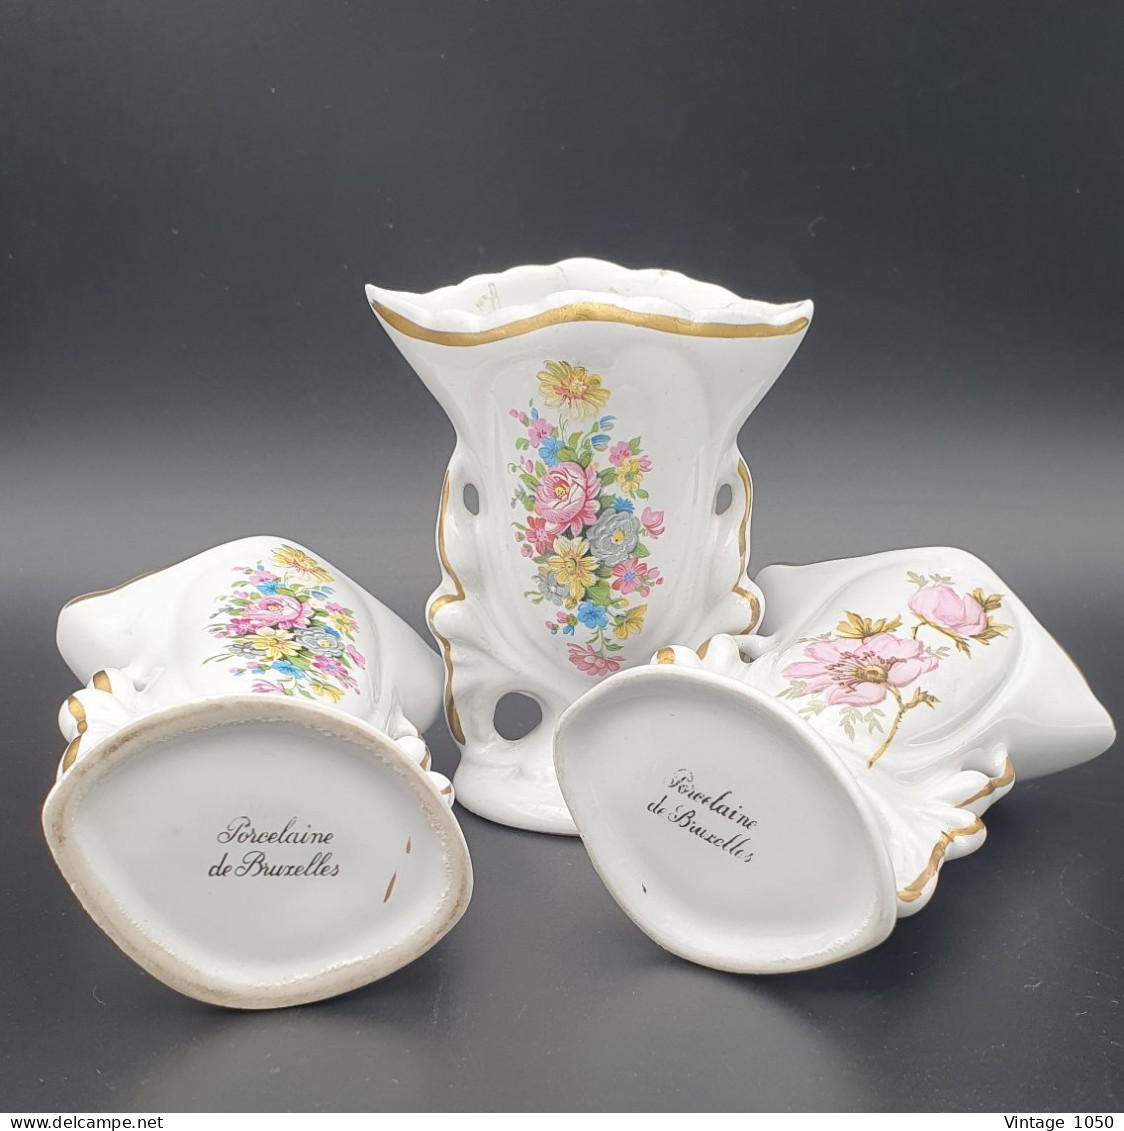 Vieux Bruxelles 3x vases miniatures Porcelaine de Bruxelles  1930 Eglantines #220422